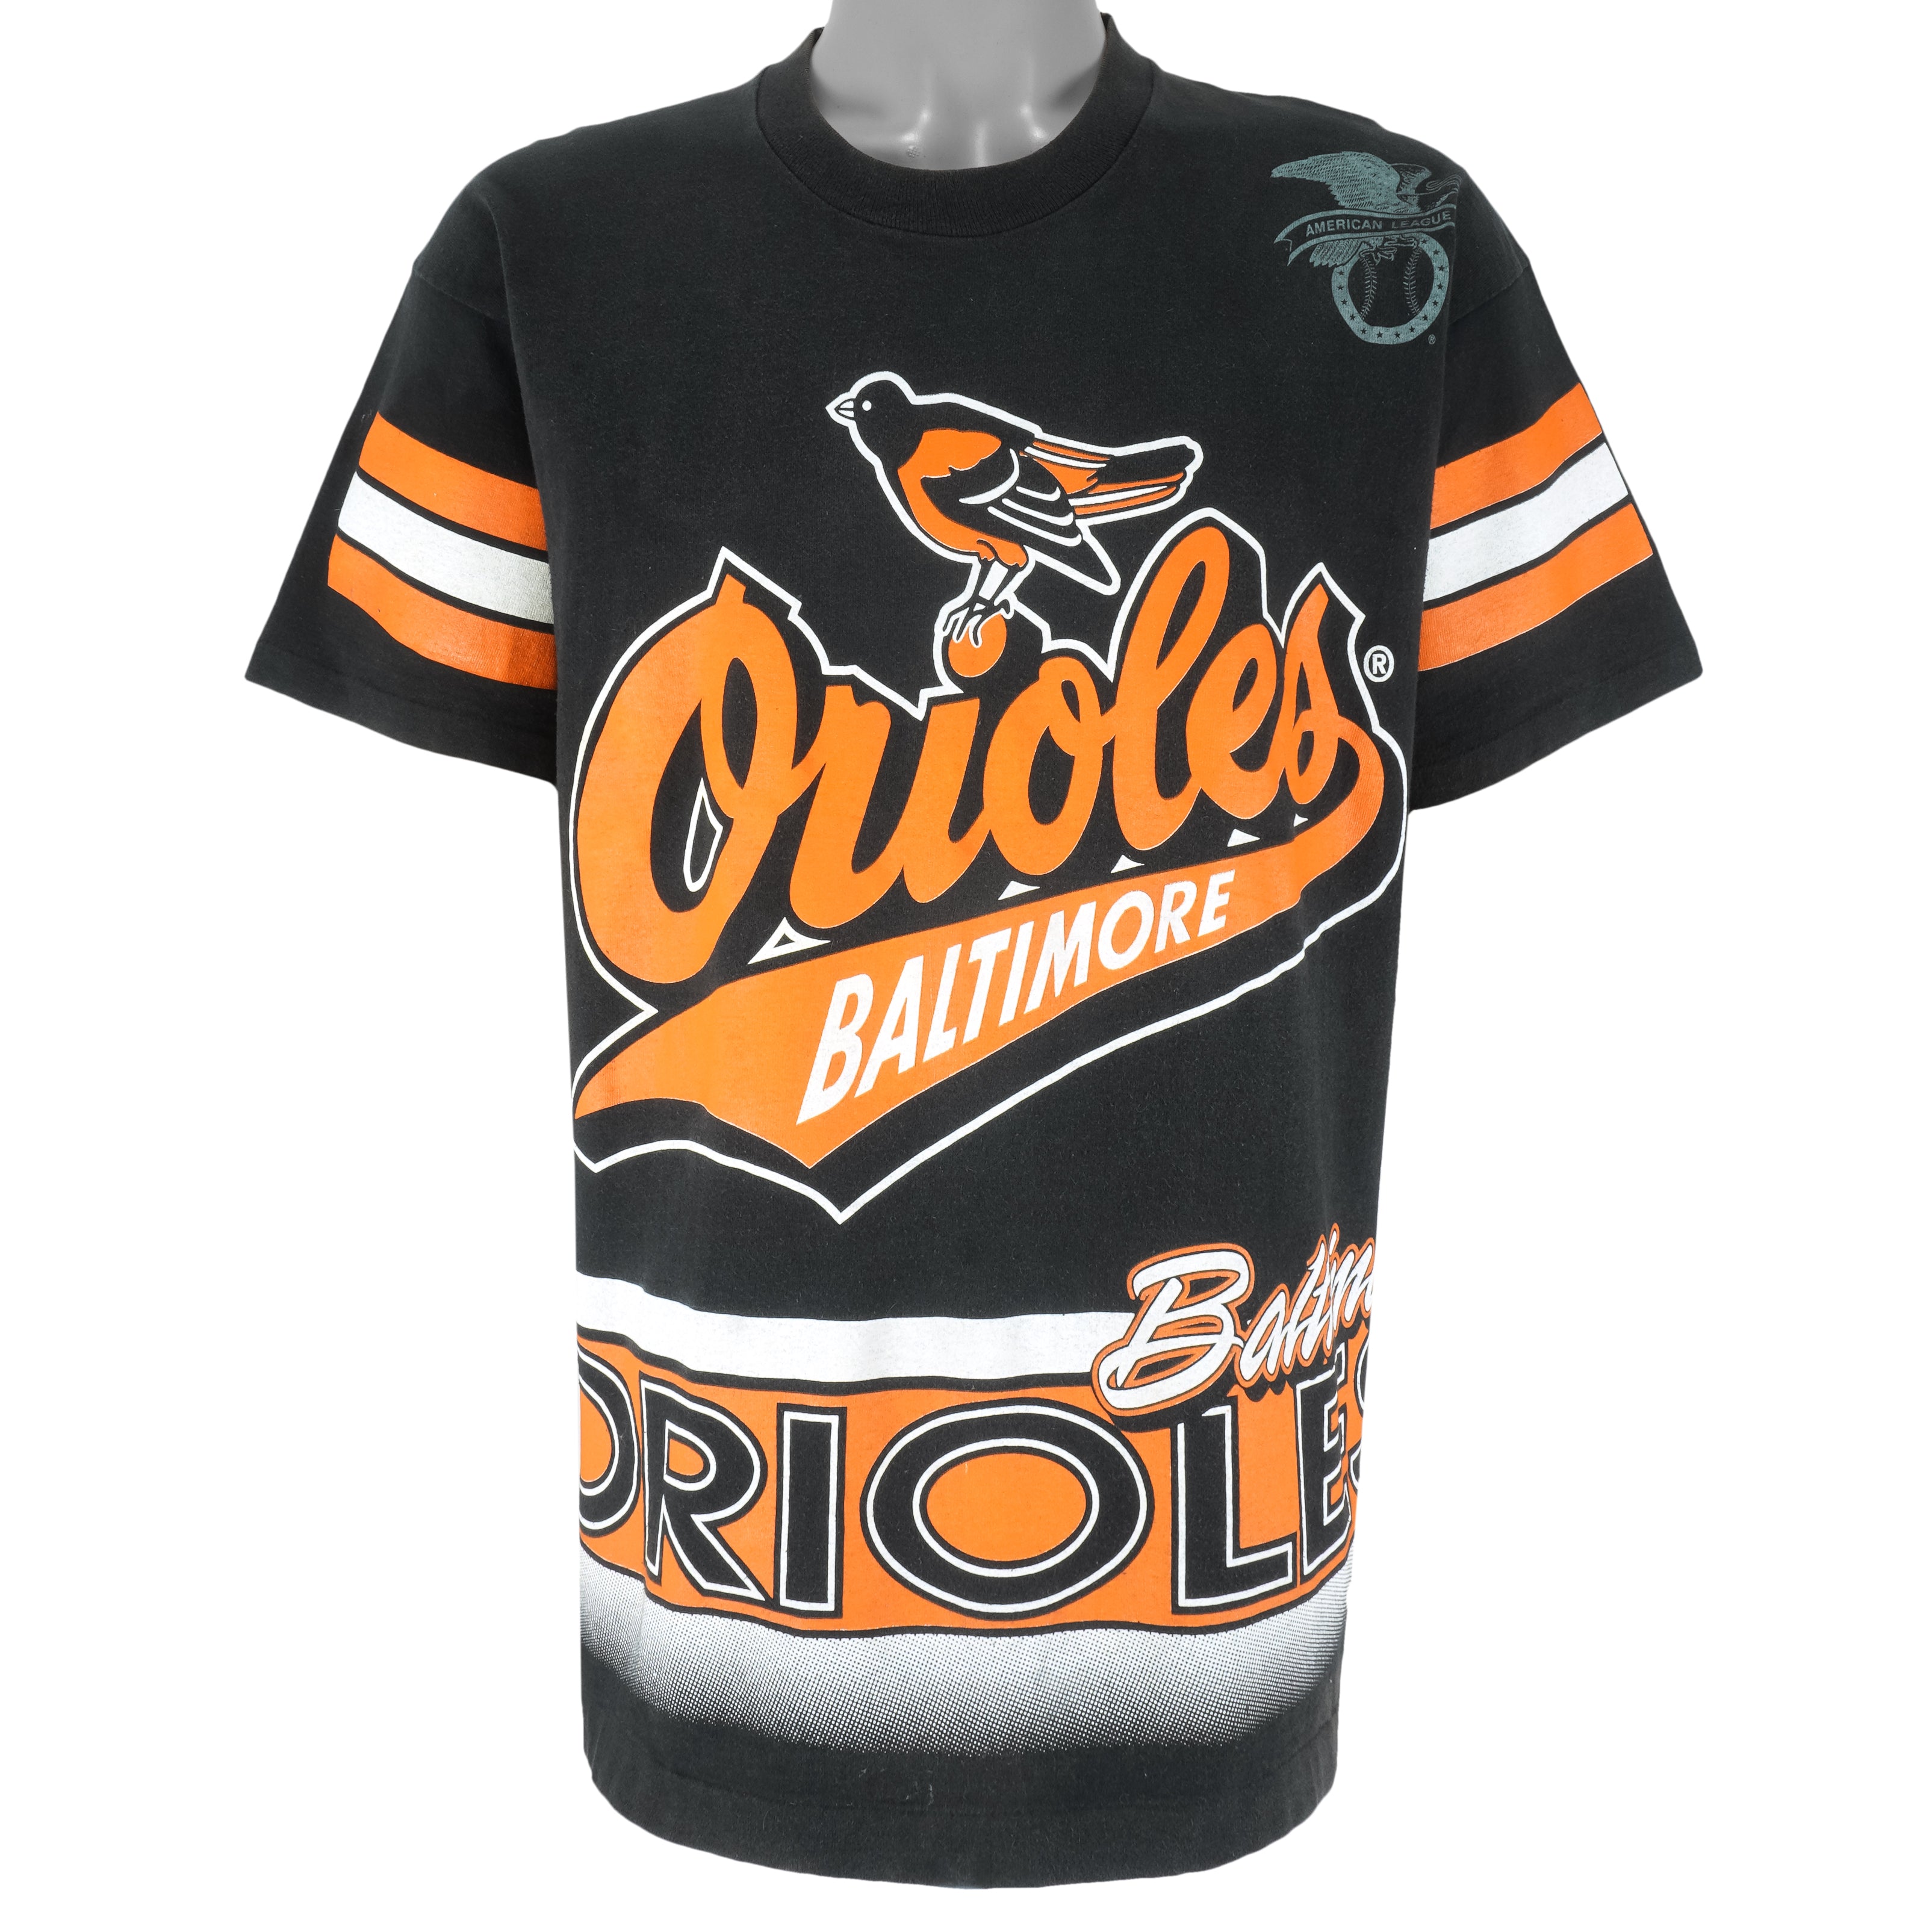 Vintage Baltimore Orioles Starter Jersey Baseball Button Up Orange Black  Large L